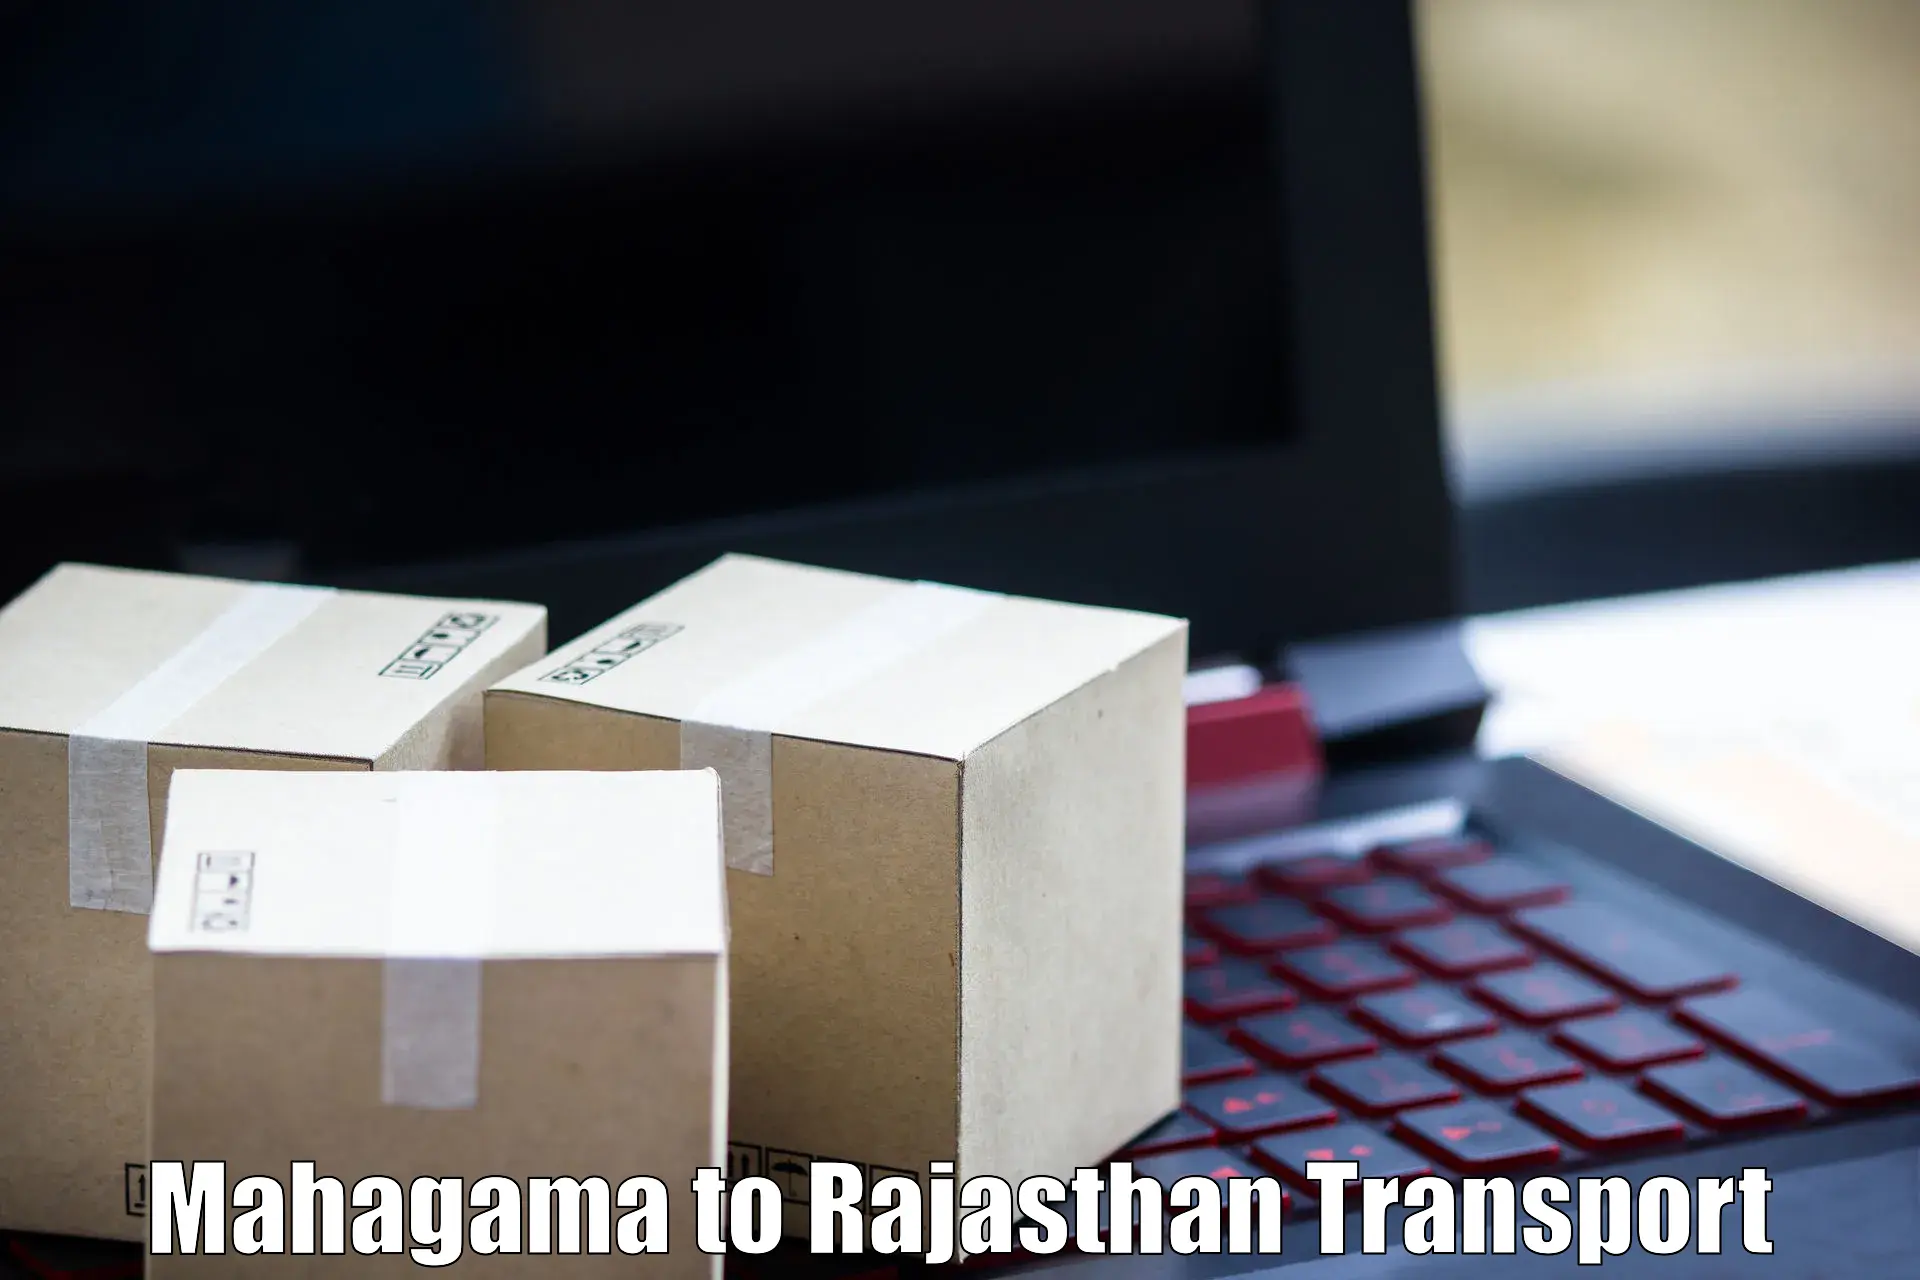 Container transport service Mahagama to Gharsana